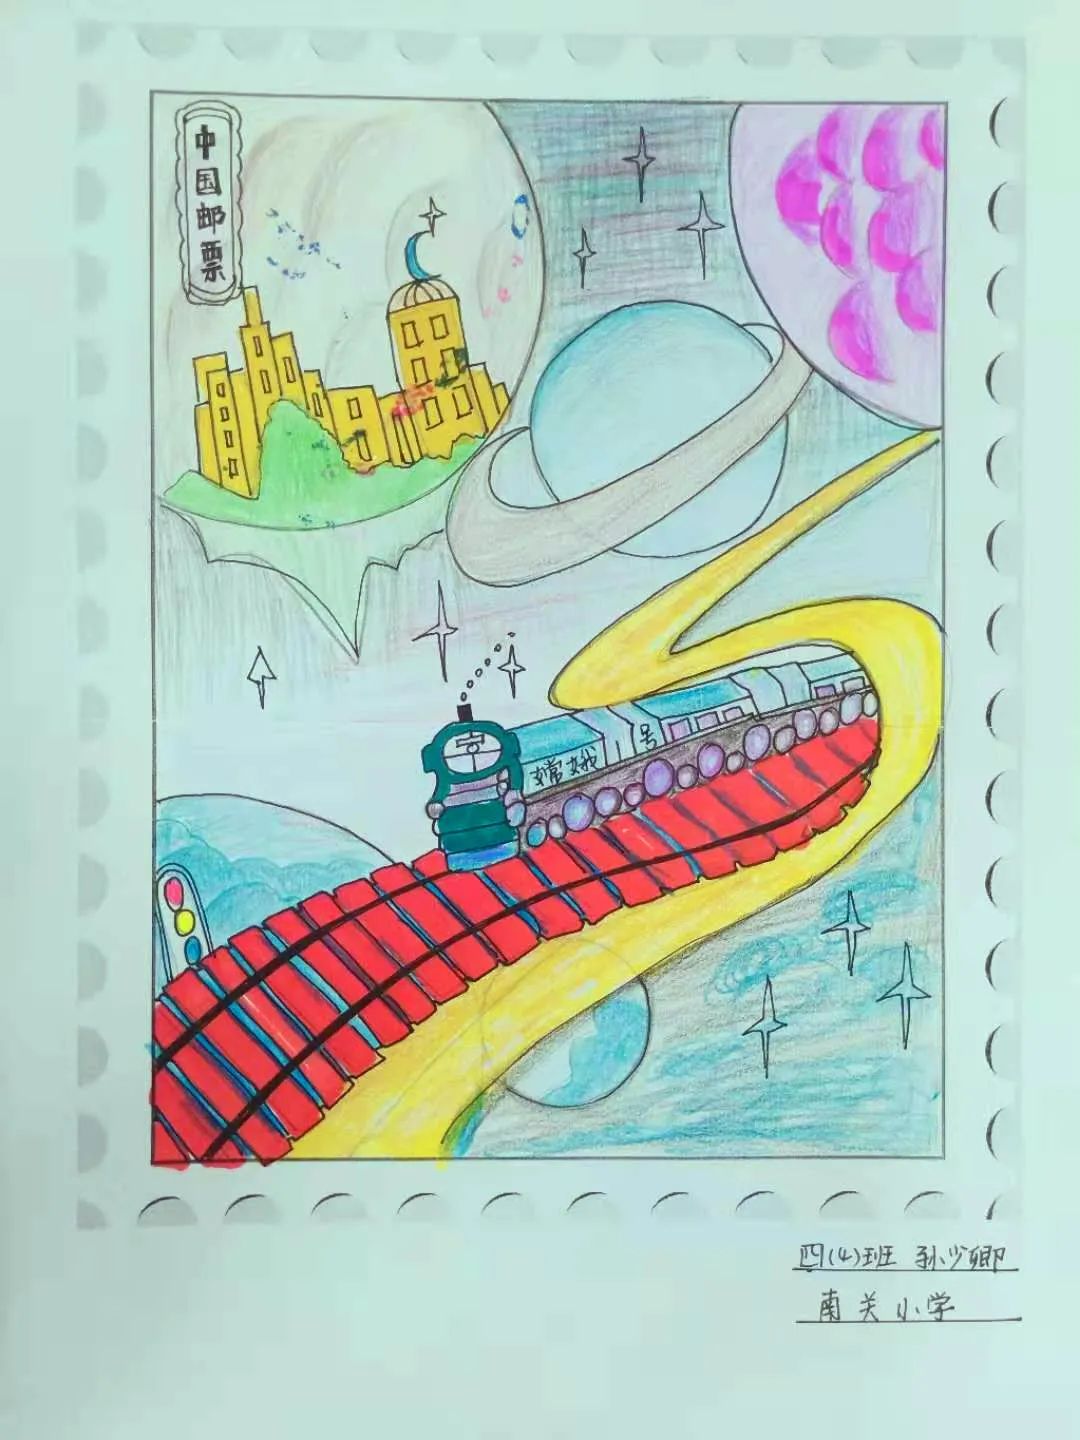 把对2035的畅想画成邮票,属于我们自己的邮票,贴上它,寄往2035!